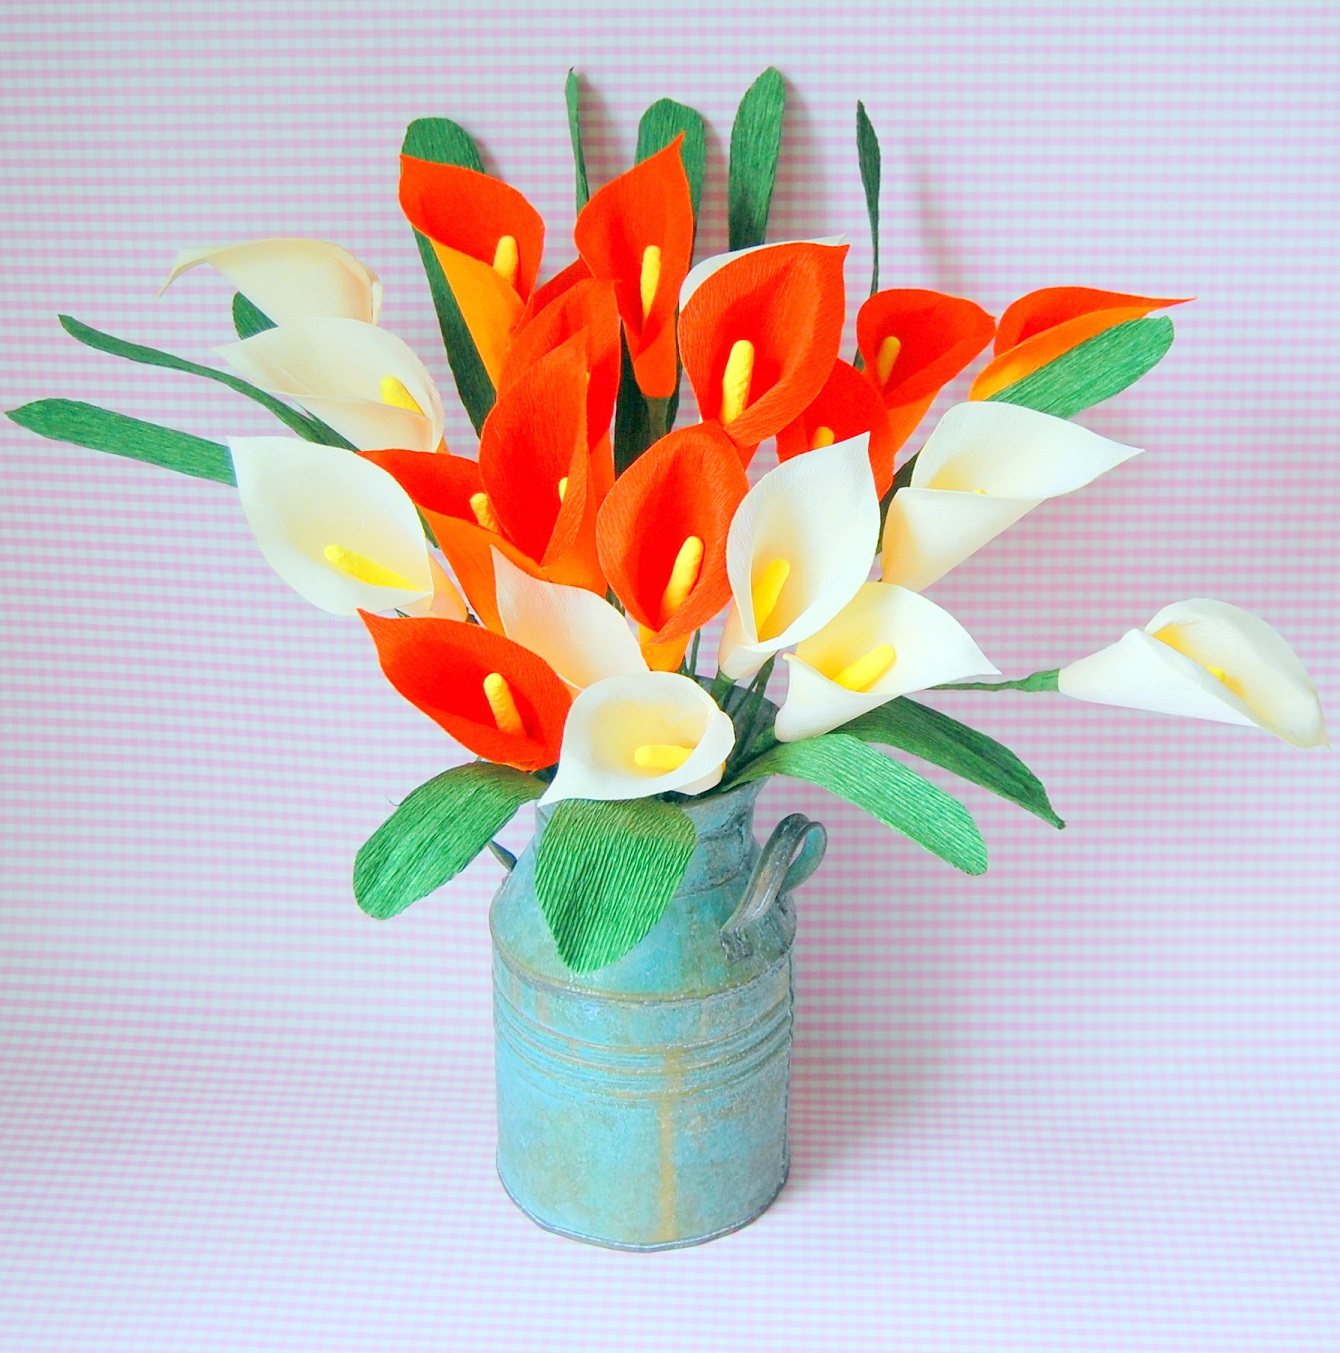 Top 8 DIY paper flower tutorials | Handmade PaPer FloweRs by Maria Noble